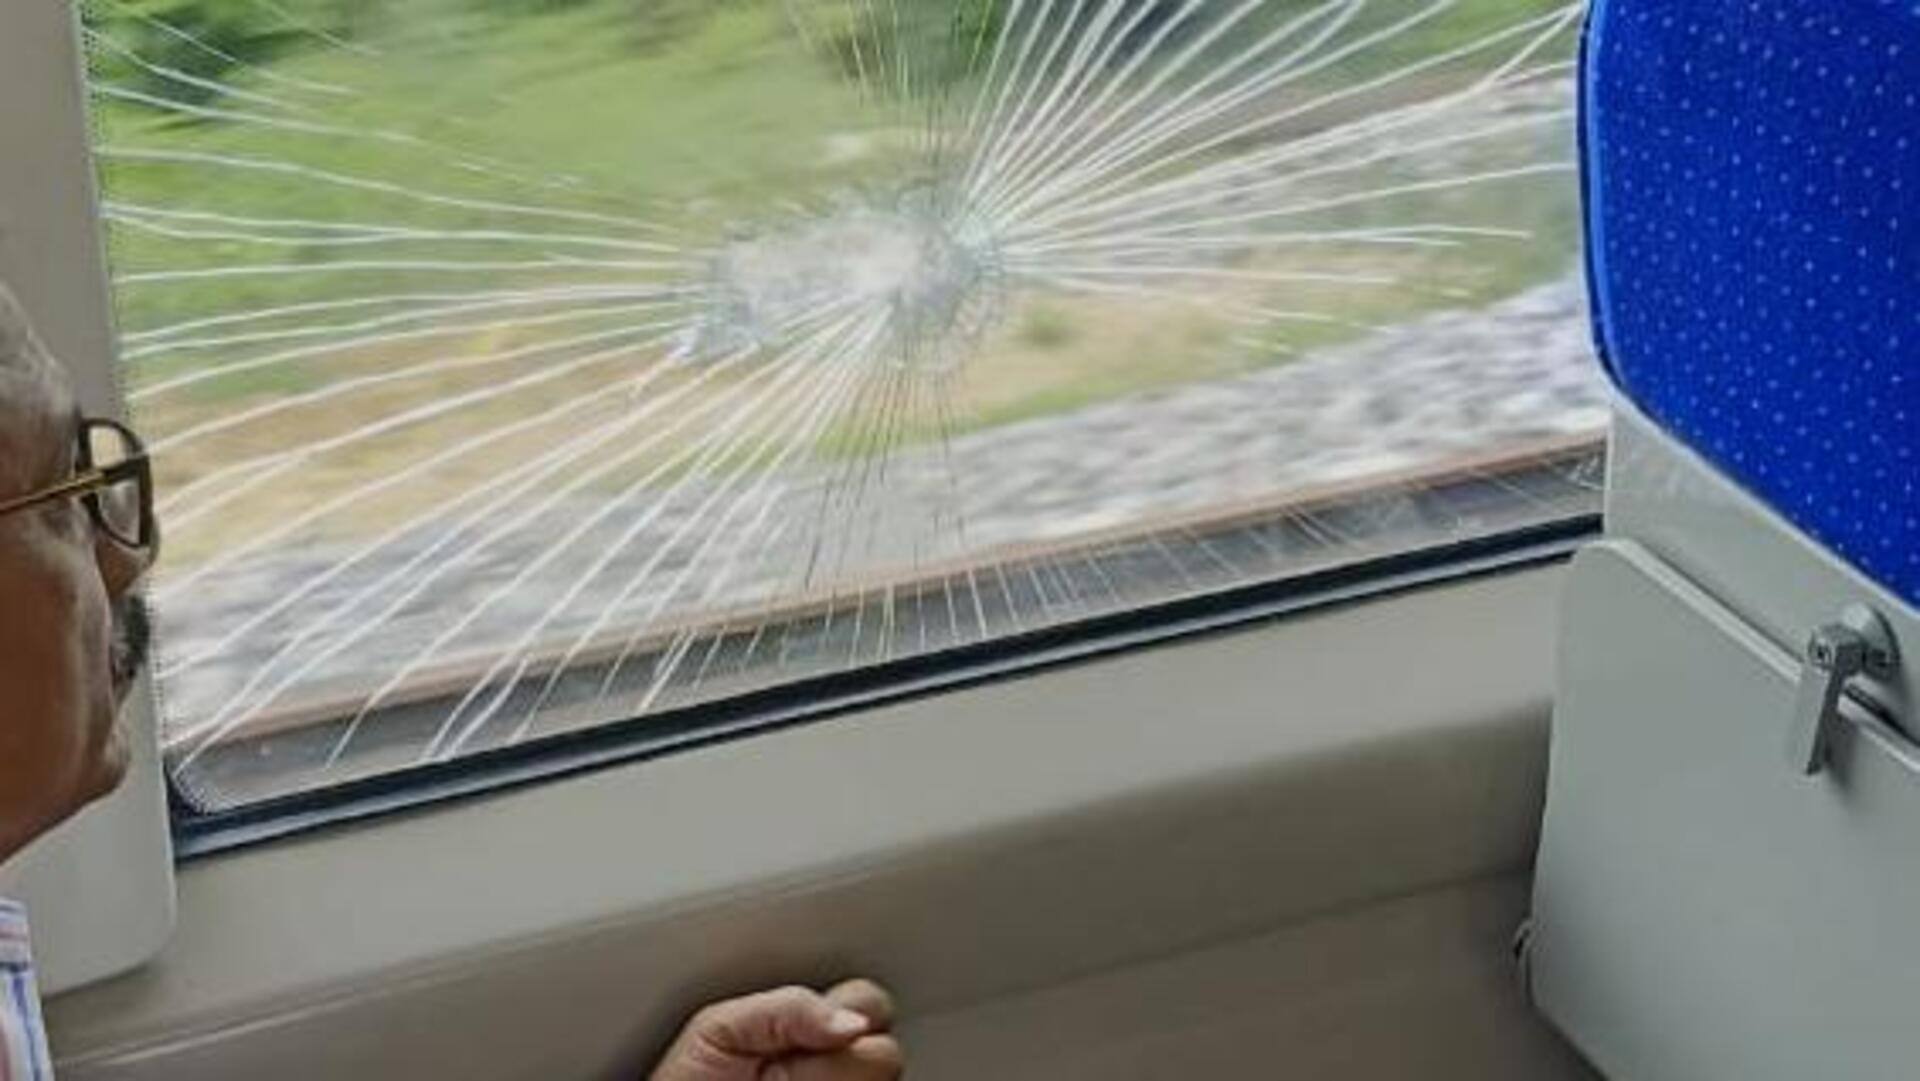 उत्तर प्रदेश: अयोध्या में वंदे भारत एक्सप्रेस पर पथराव, ट्रेन की खिड़कियों के कांच टूटे